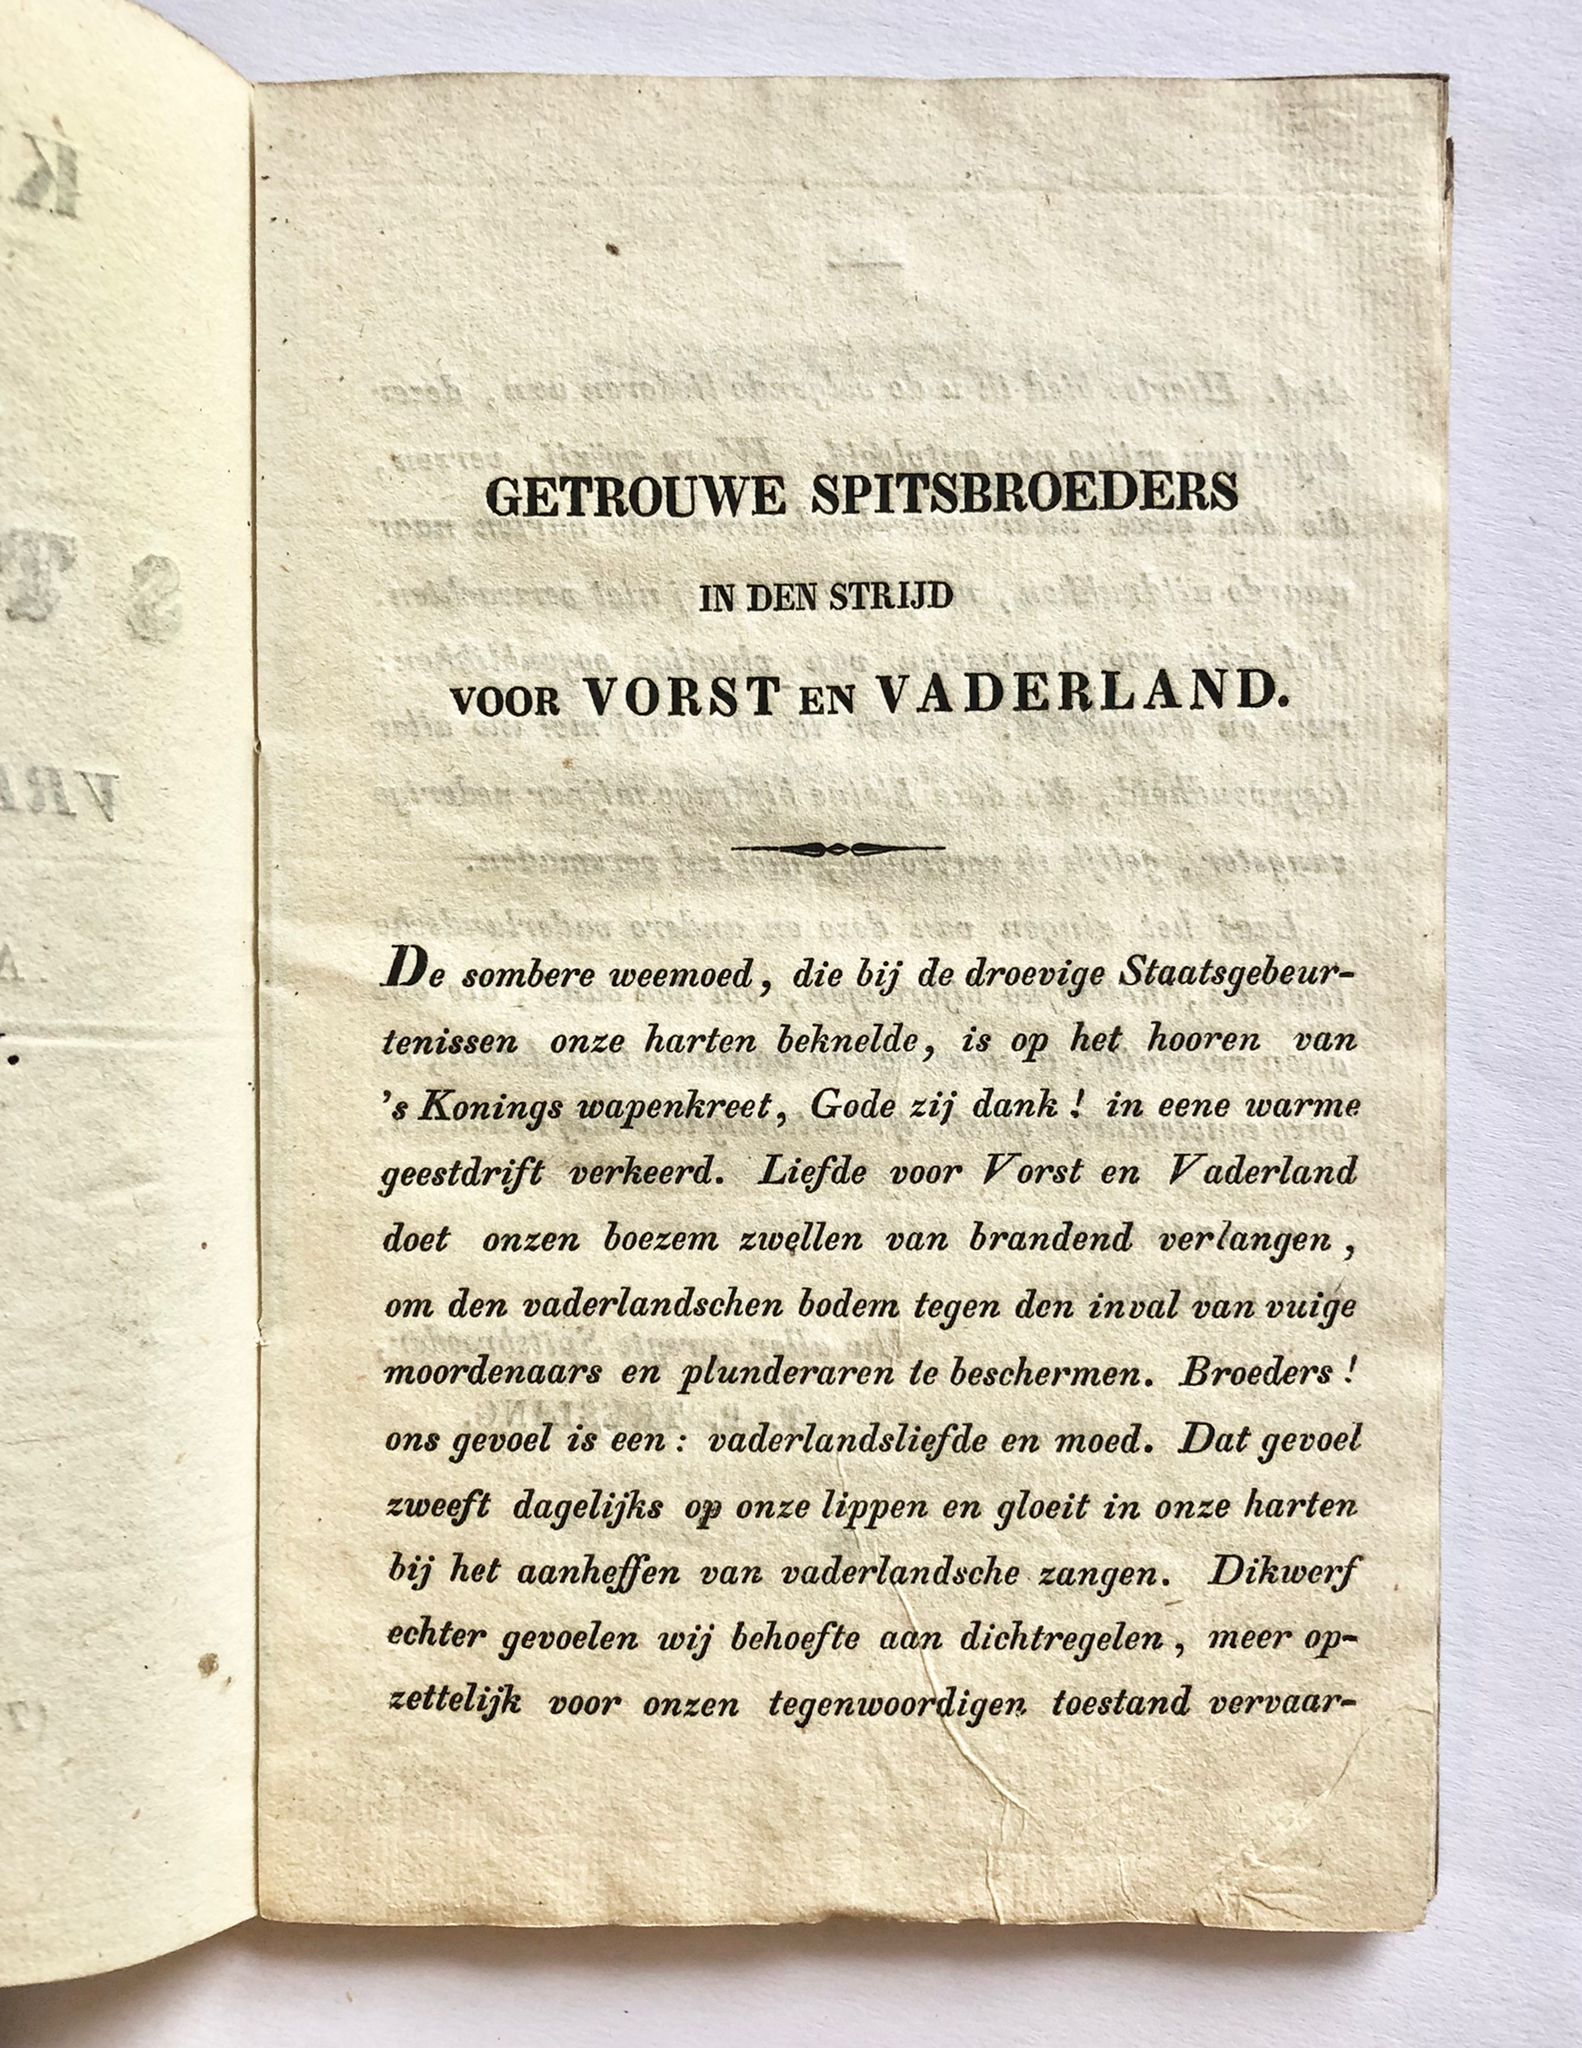 [Groningen] Krijgsliederen voor de Groningsche studenten, uitmakende eene kompagnie Vrijwillige Flankeurs, bij de 8ste afdeeling infanterie, bij M. Smit, te Groningen, 1830, 24 pp.